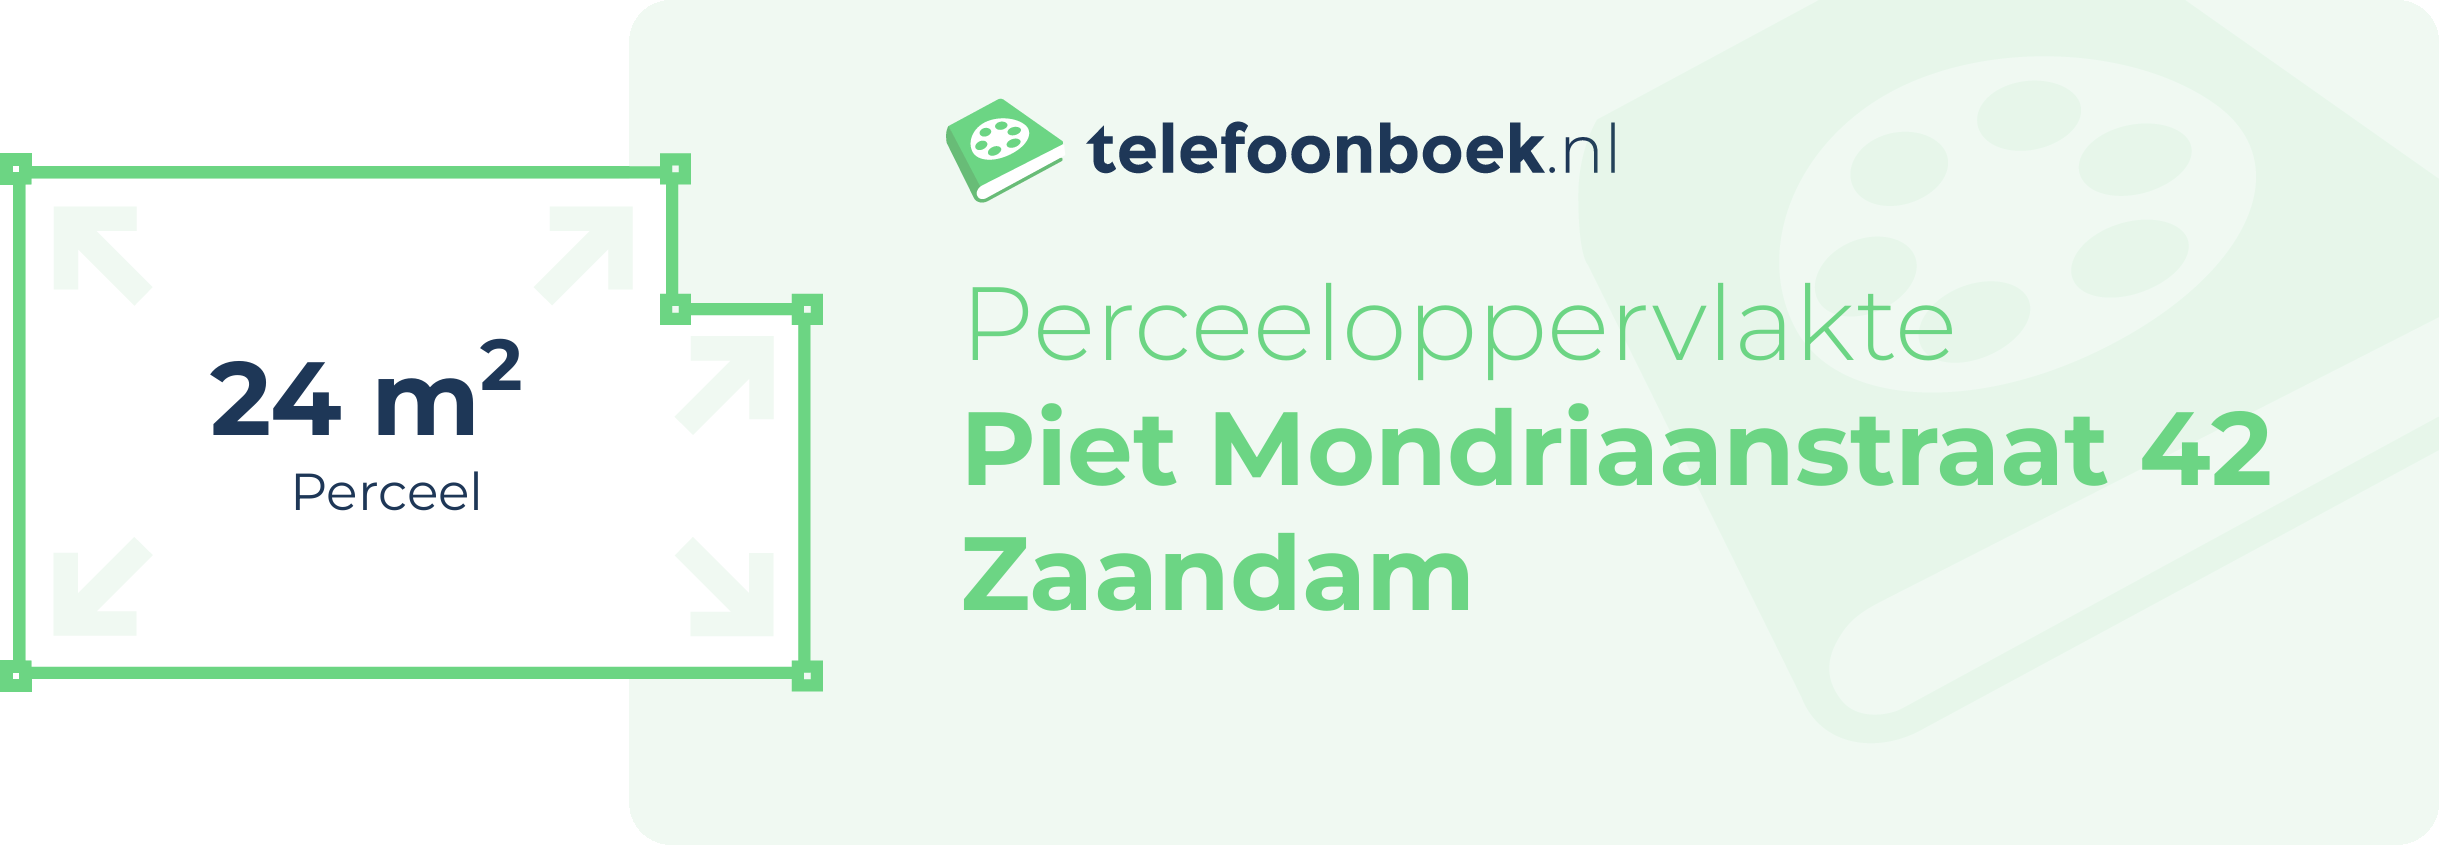 Perceeloppervlakte Piet Mondriaanstraat 42 Zaandam